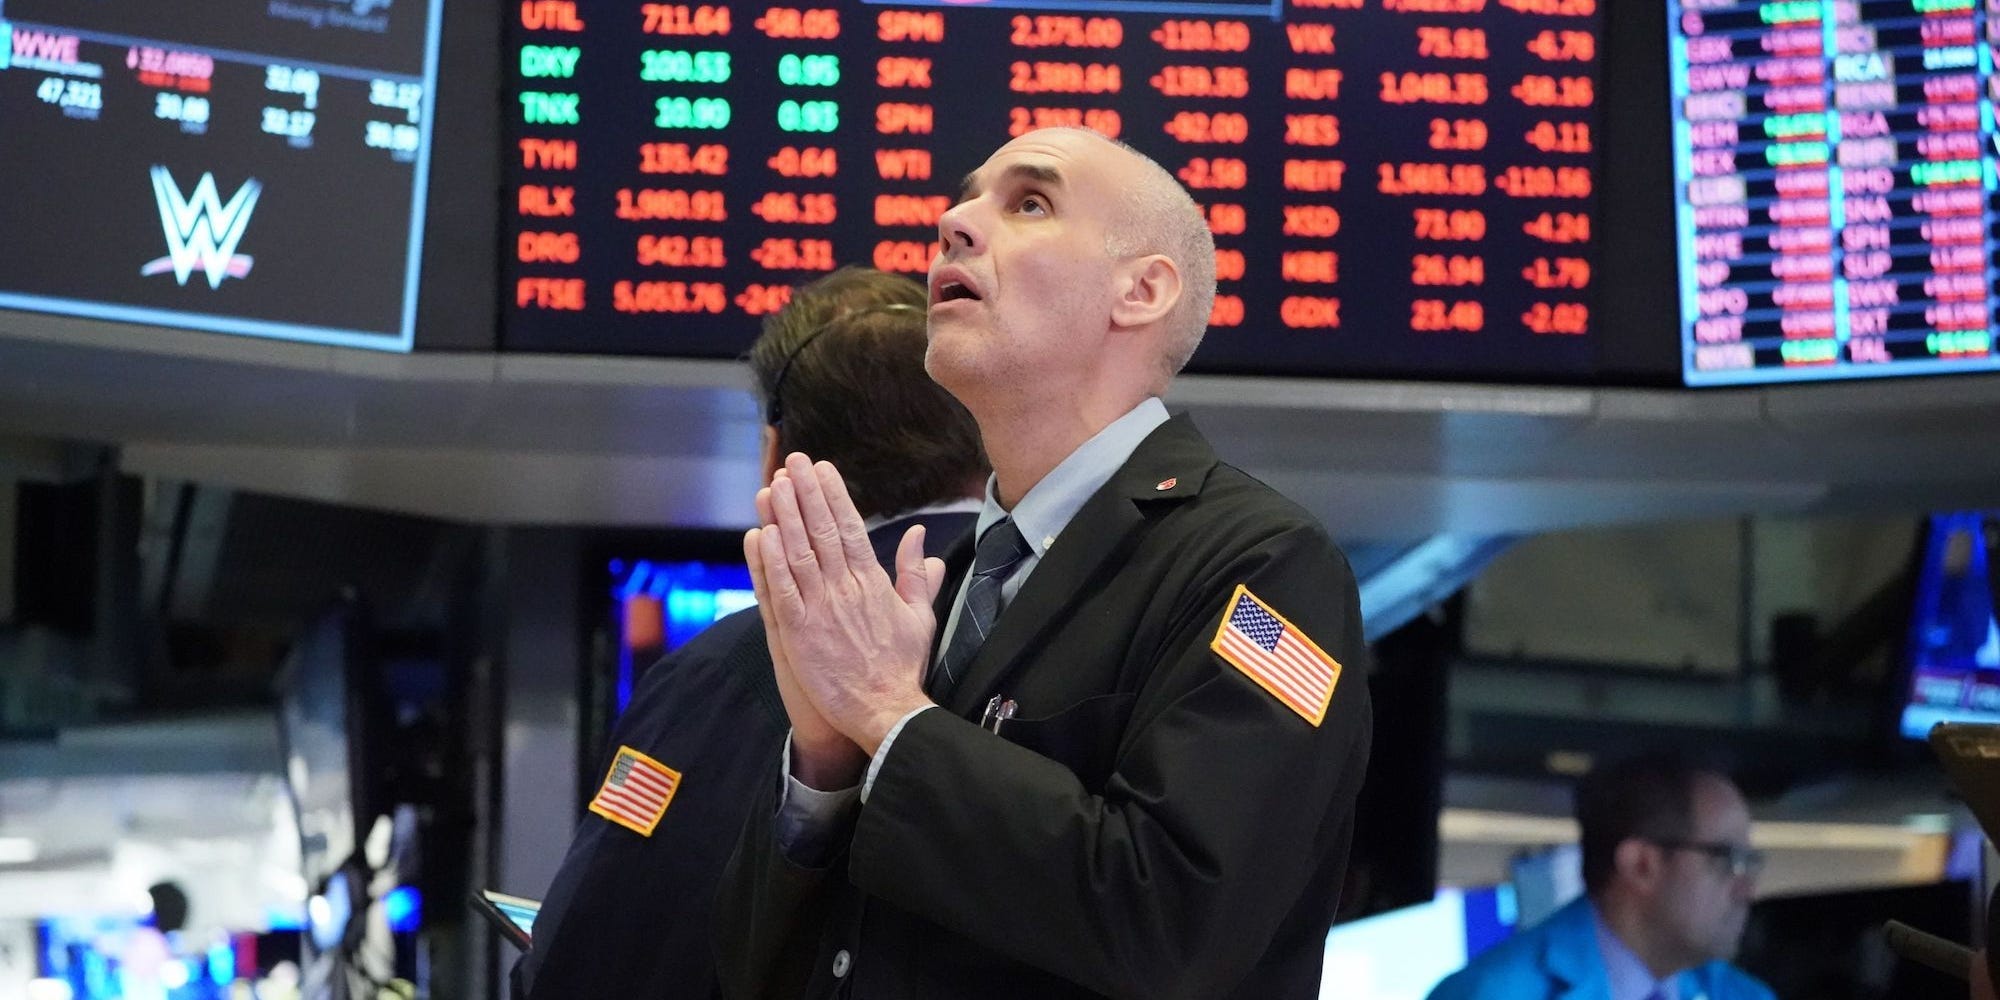 US stocks dip as stimulus talks slow ahead of funding deadline